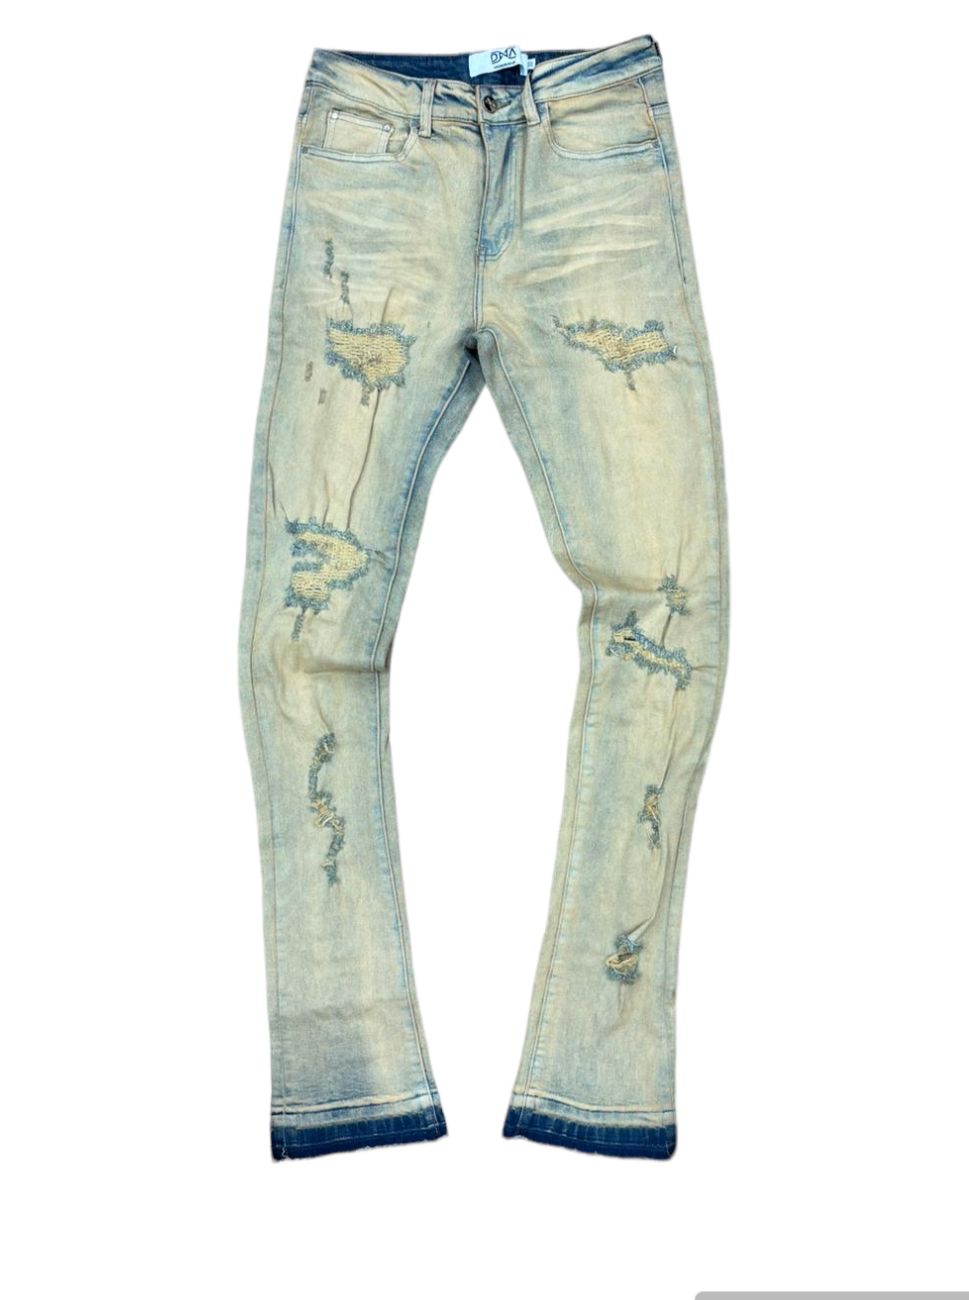 DNA Worldwide Denim Distressed Jeans - Beige/Burgundy